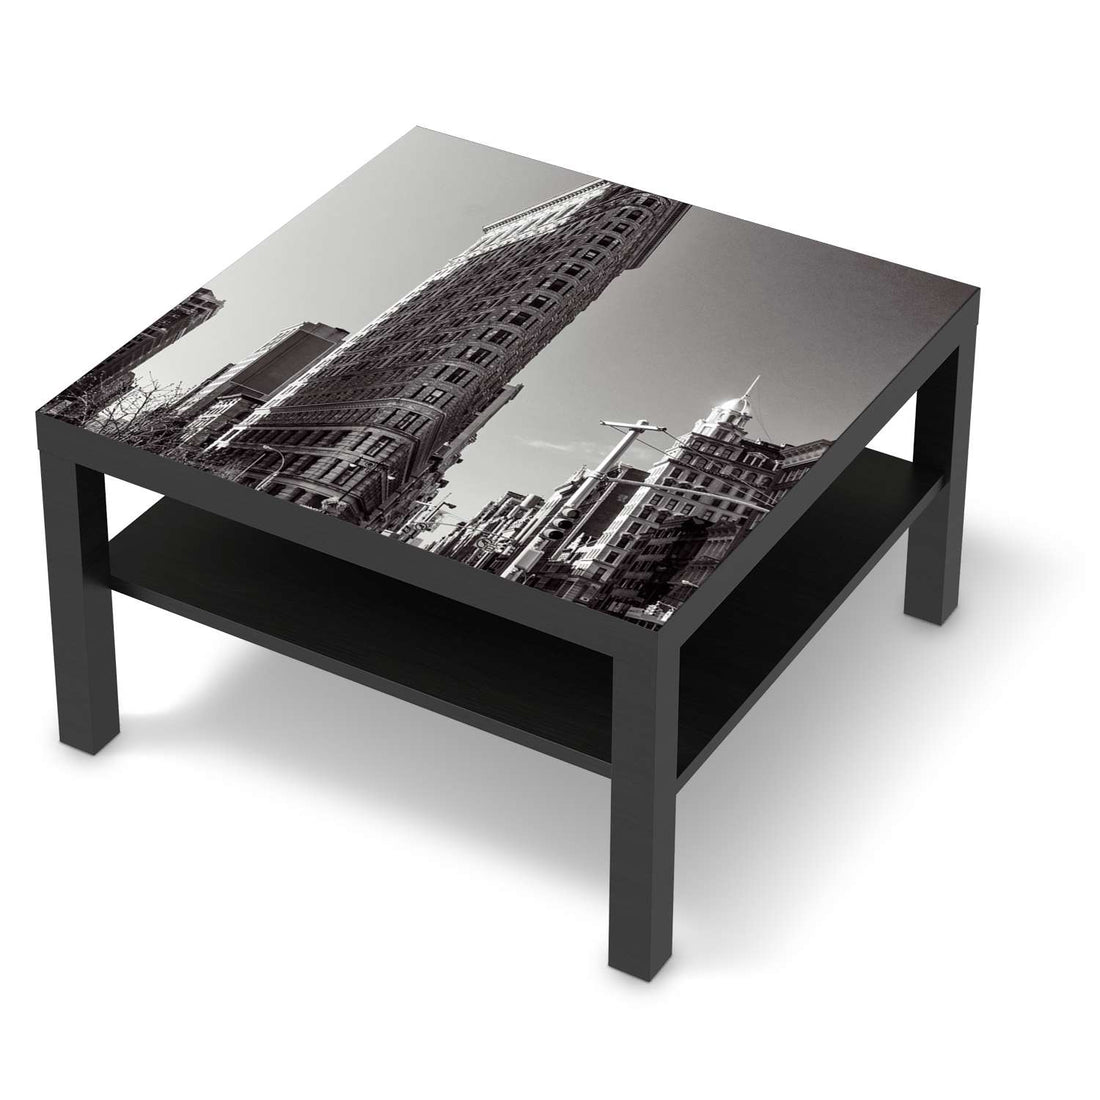 Selbstklebende Folie Manhattan - IKEA Lack Tisch 78x78 cm - schwarz